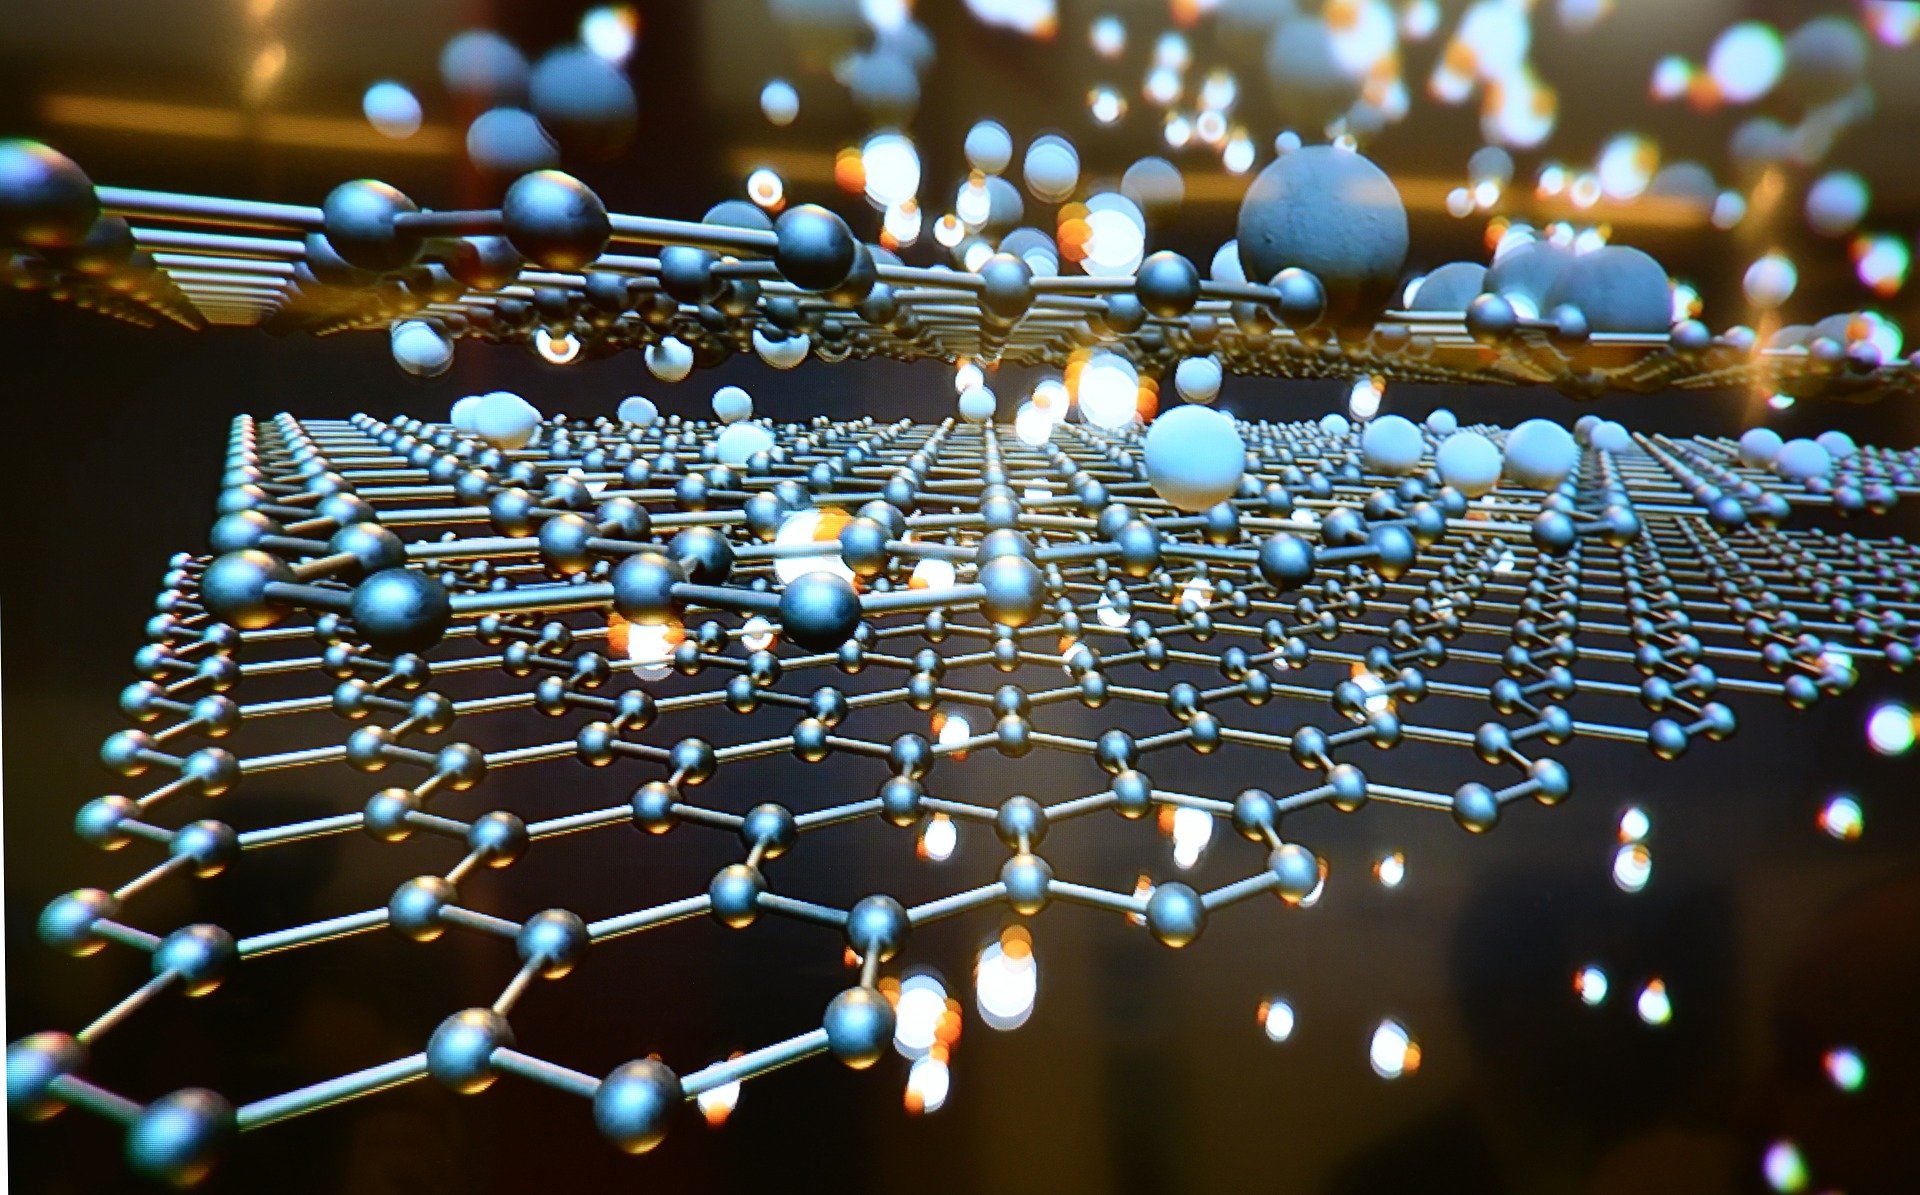 New material technology. Графен молекула. Наноматериалы, наноструктуры, нанотехнологии. Графен материал. Графен нанотехнологии.